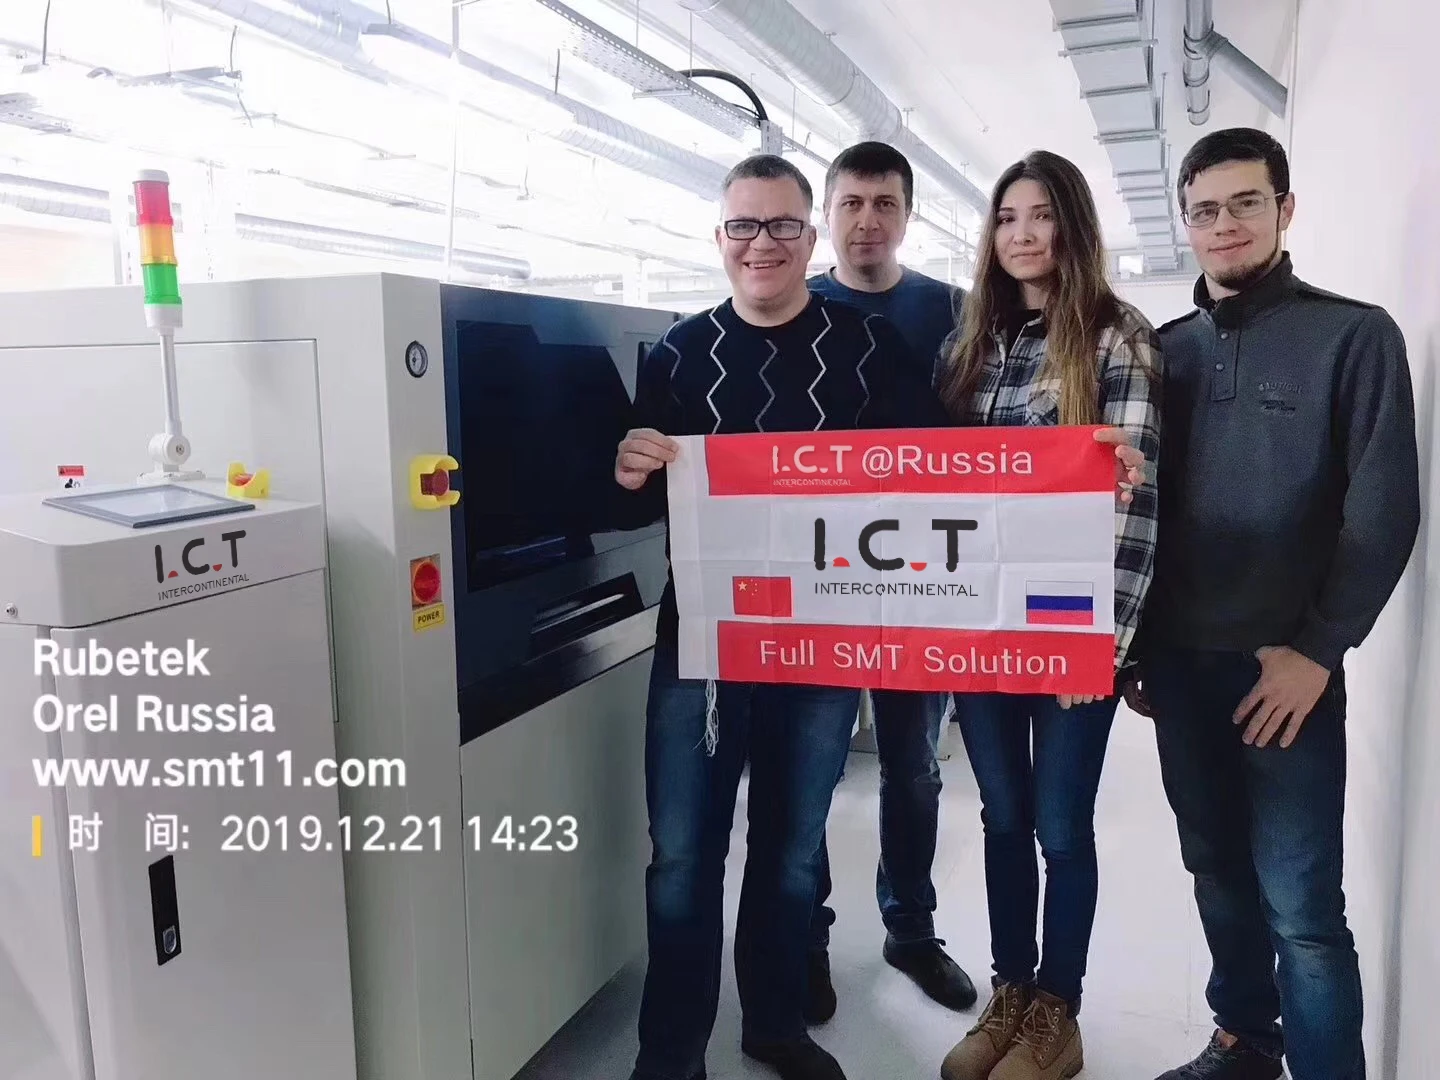 Russia (Rubetek) Smart Appliances Customer